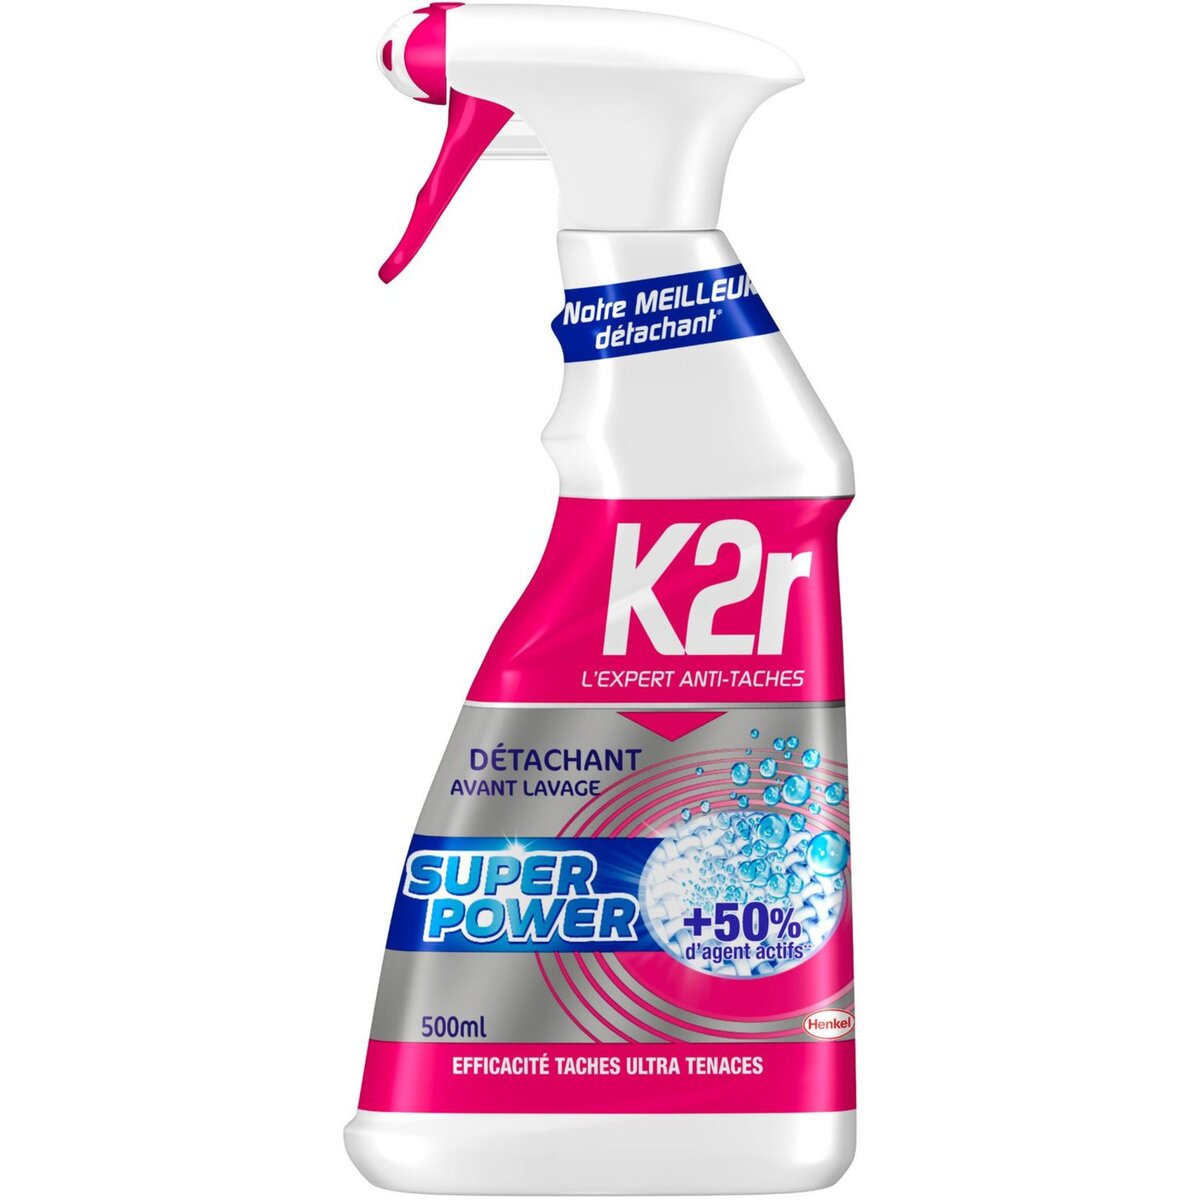 K2r Détachant Avant Lavage Super Power+50% D'agent Actifs (Henkel